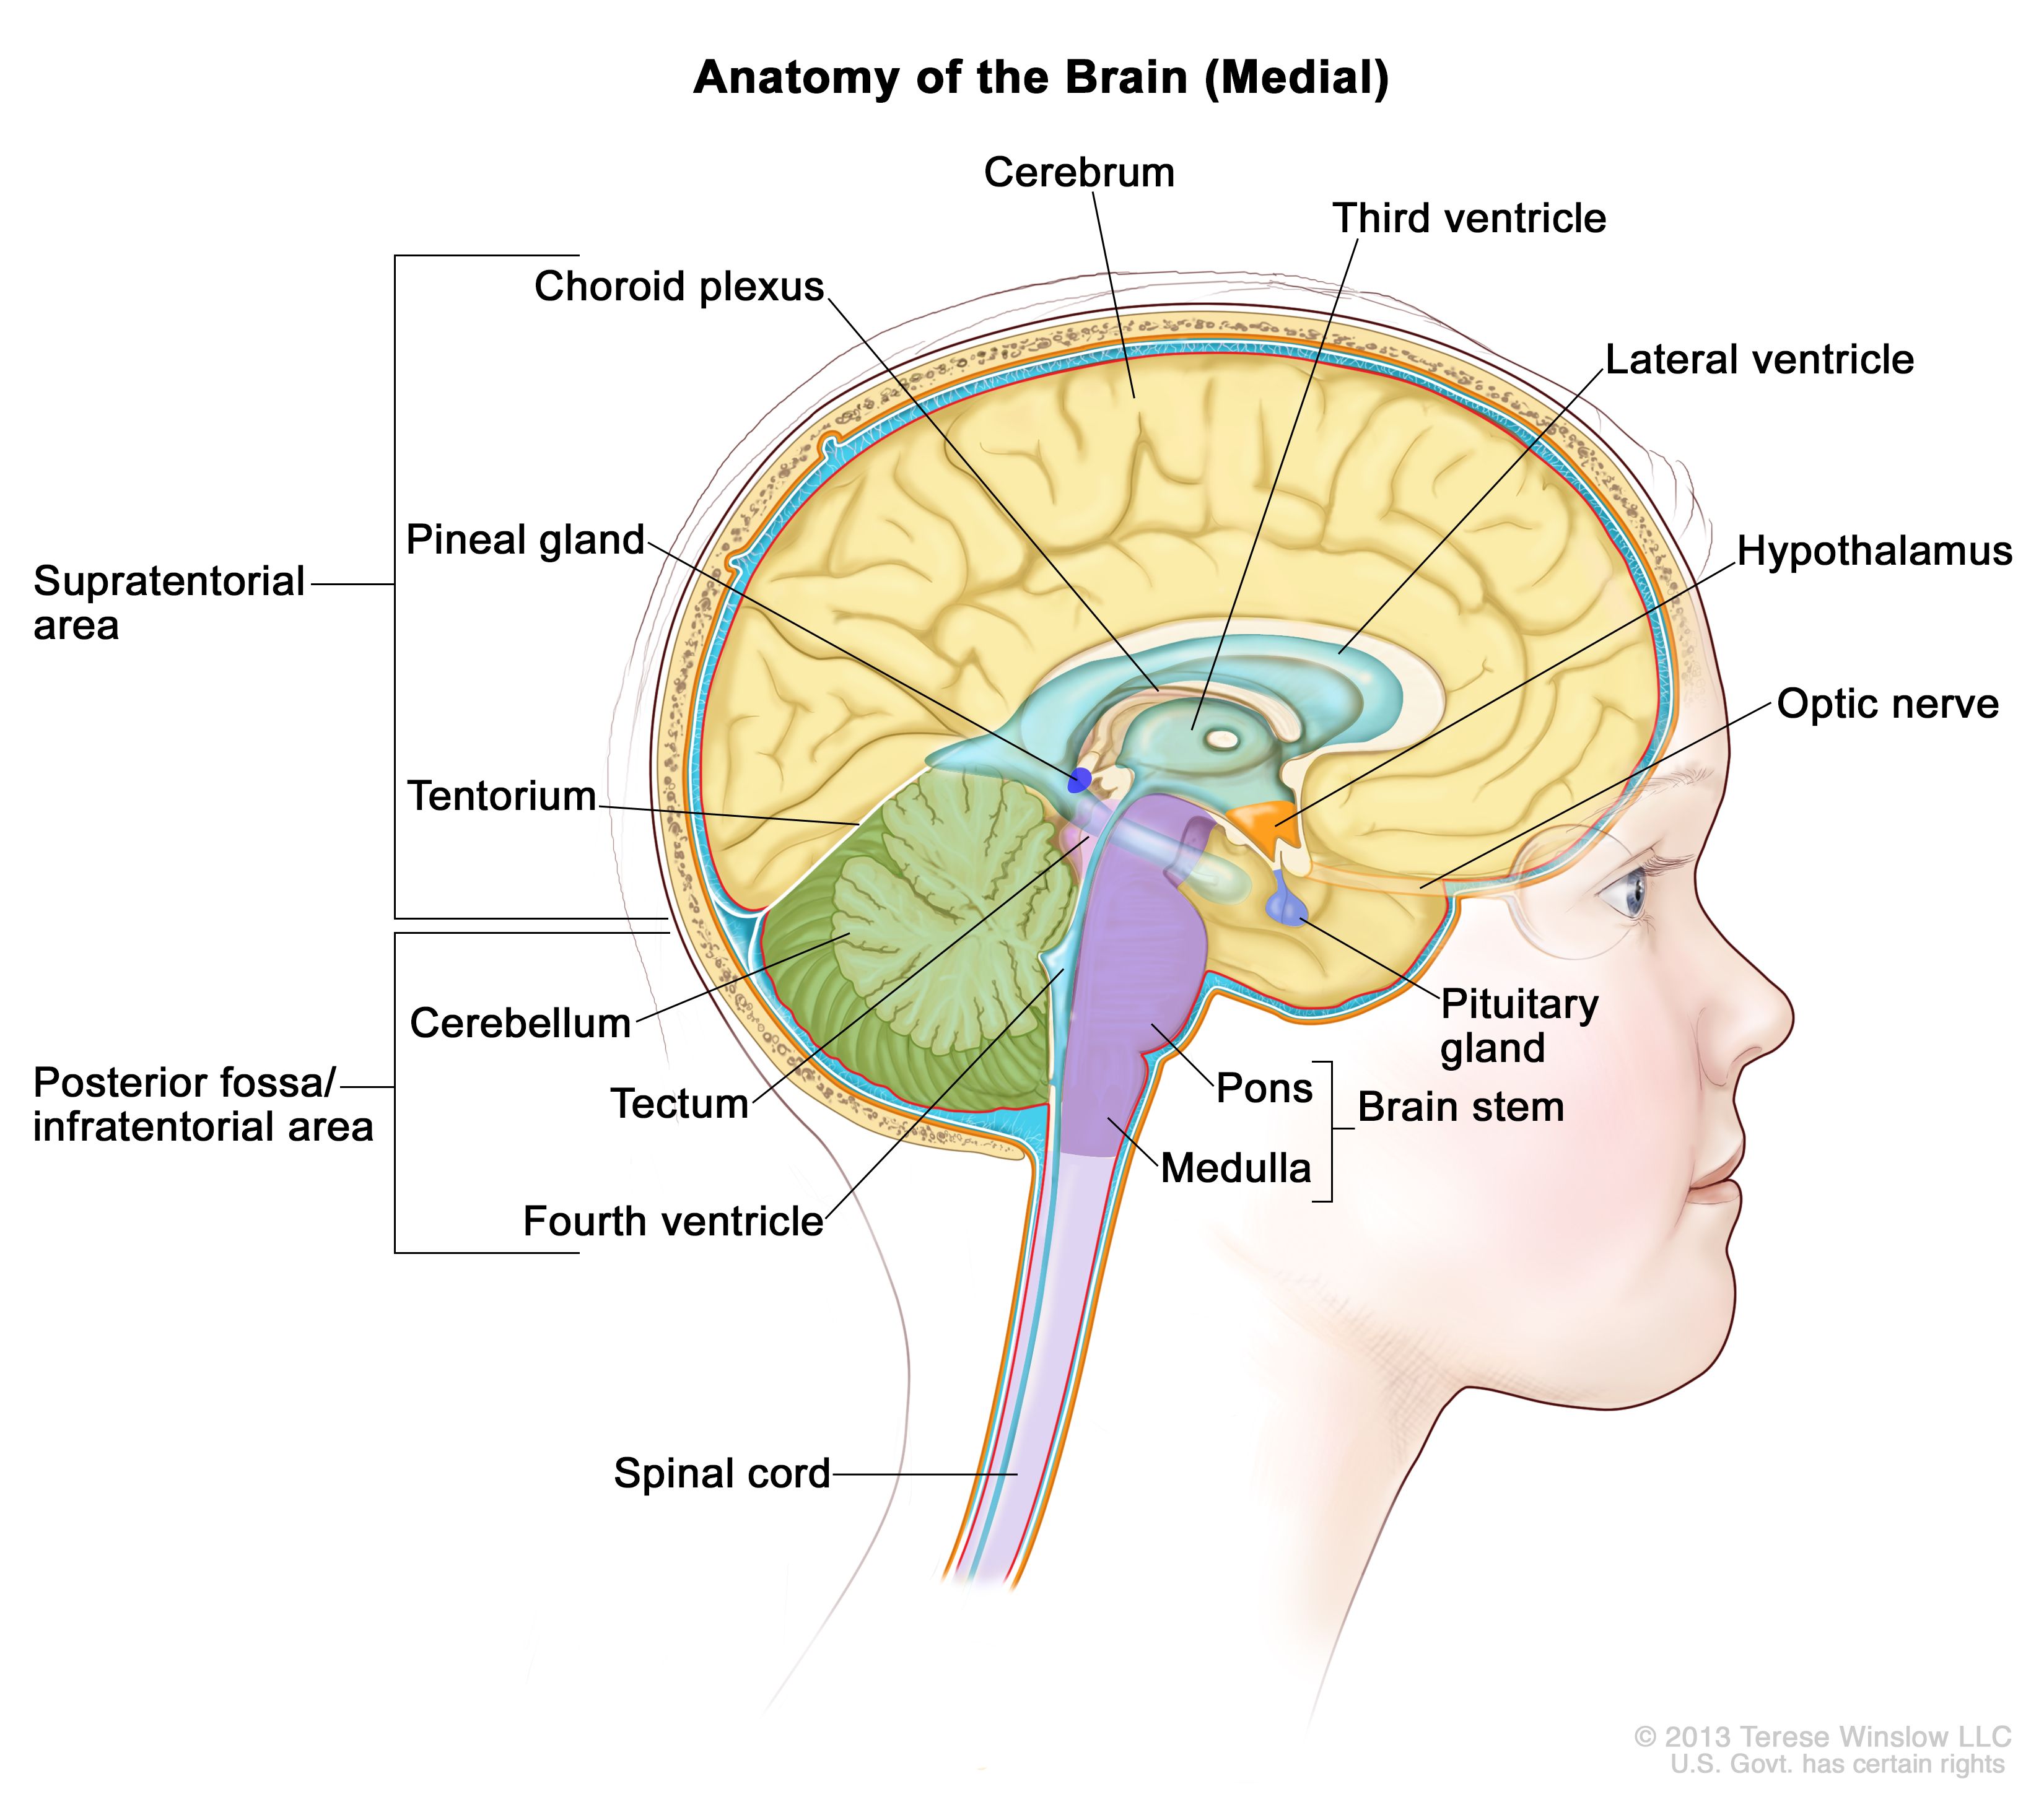 脳の解剖図：テント上領域（脳の上部）および後頭蓋窩（テント下）領域（脳の後方下部）を示す。テント上領域に、大脳、側脳室、第三脳室、脈絡叢、視床下部、松果体、下垂体、視神経を含む。後頭蓋窩（テント下）領域に、小脳、中脳蓋、第四脳室、脳幹幹（脳橋および、延髄）含む。小脳テントと脊髄も示されている。